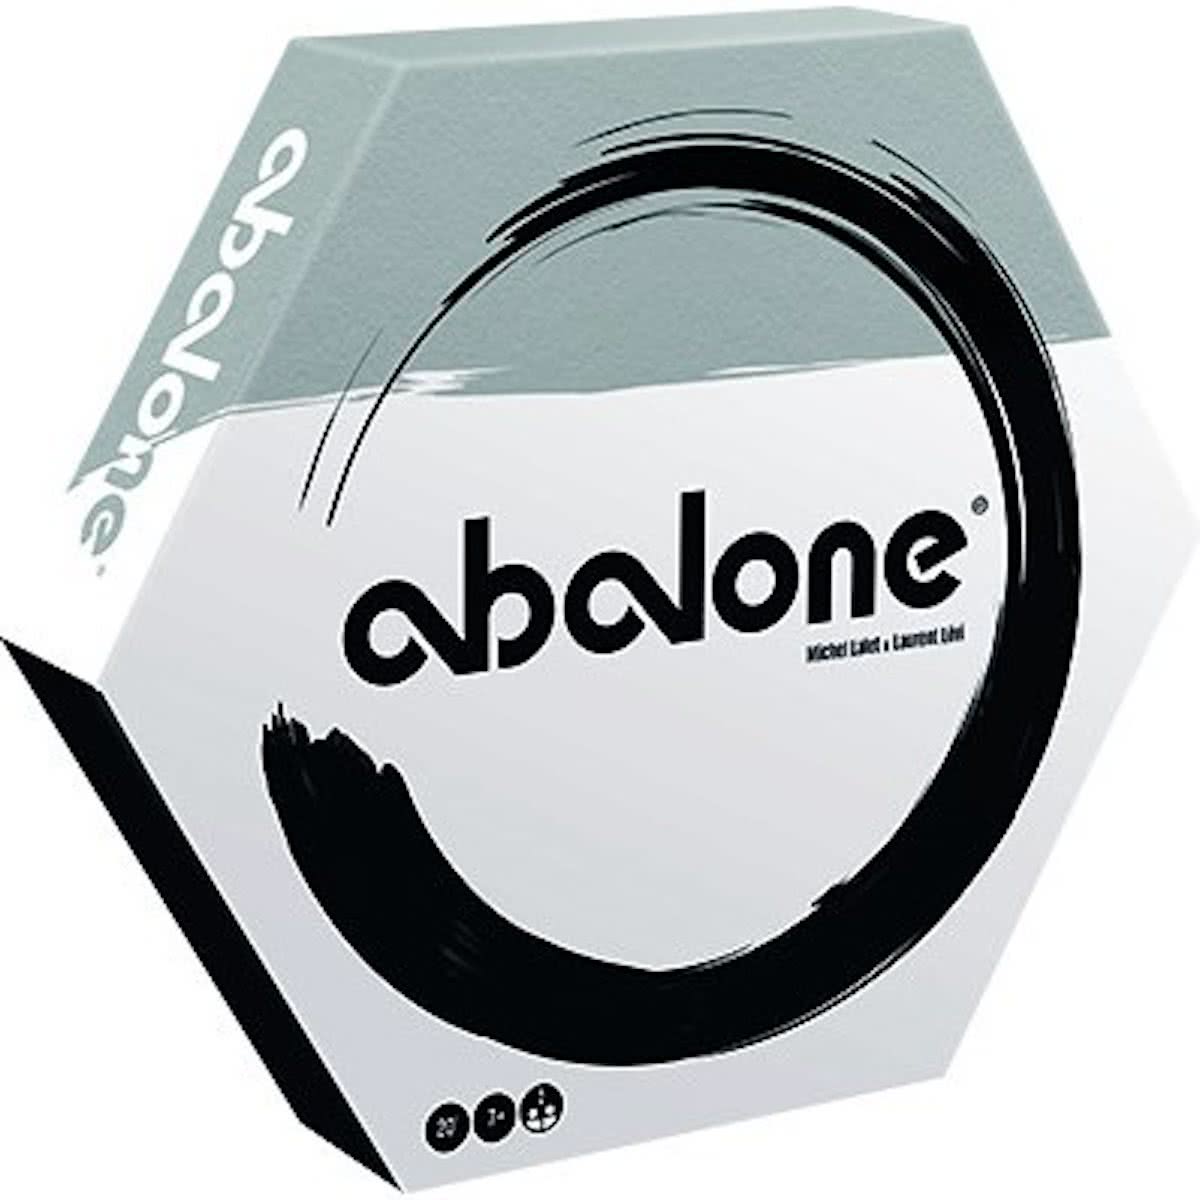 Abalone description reviews